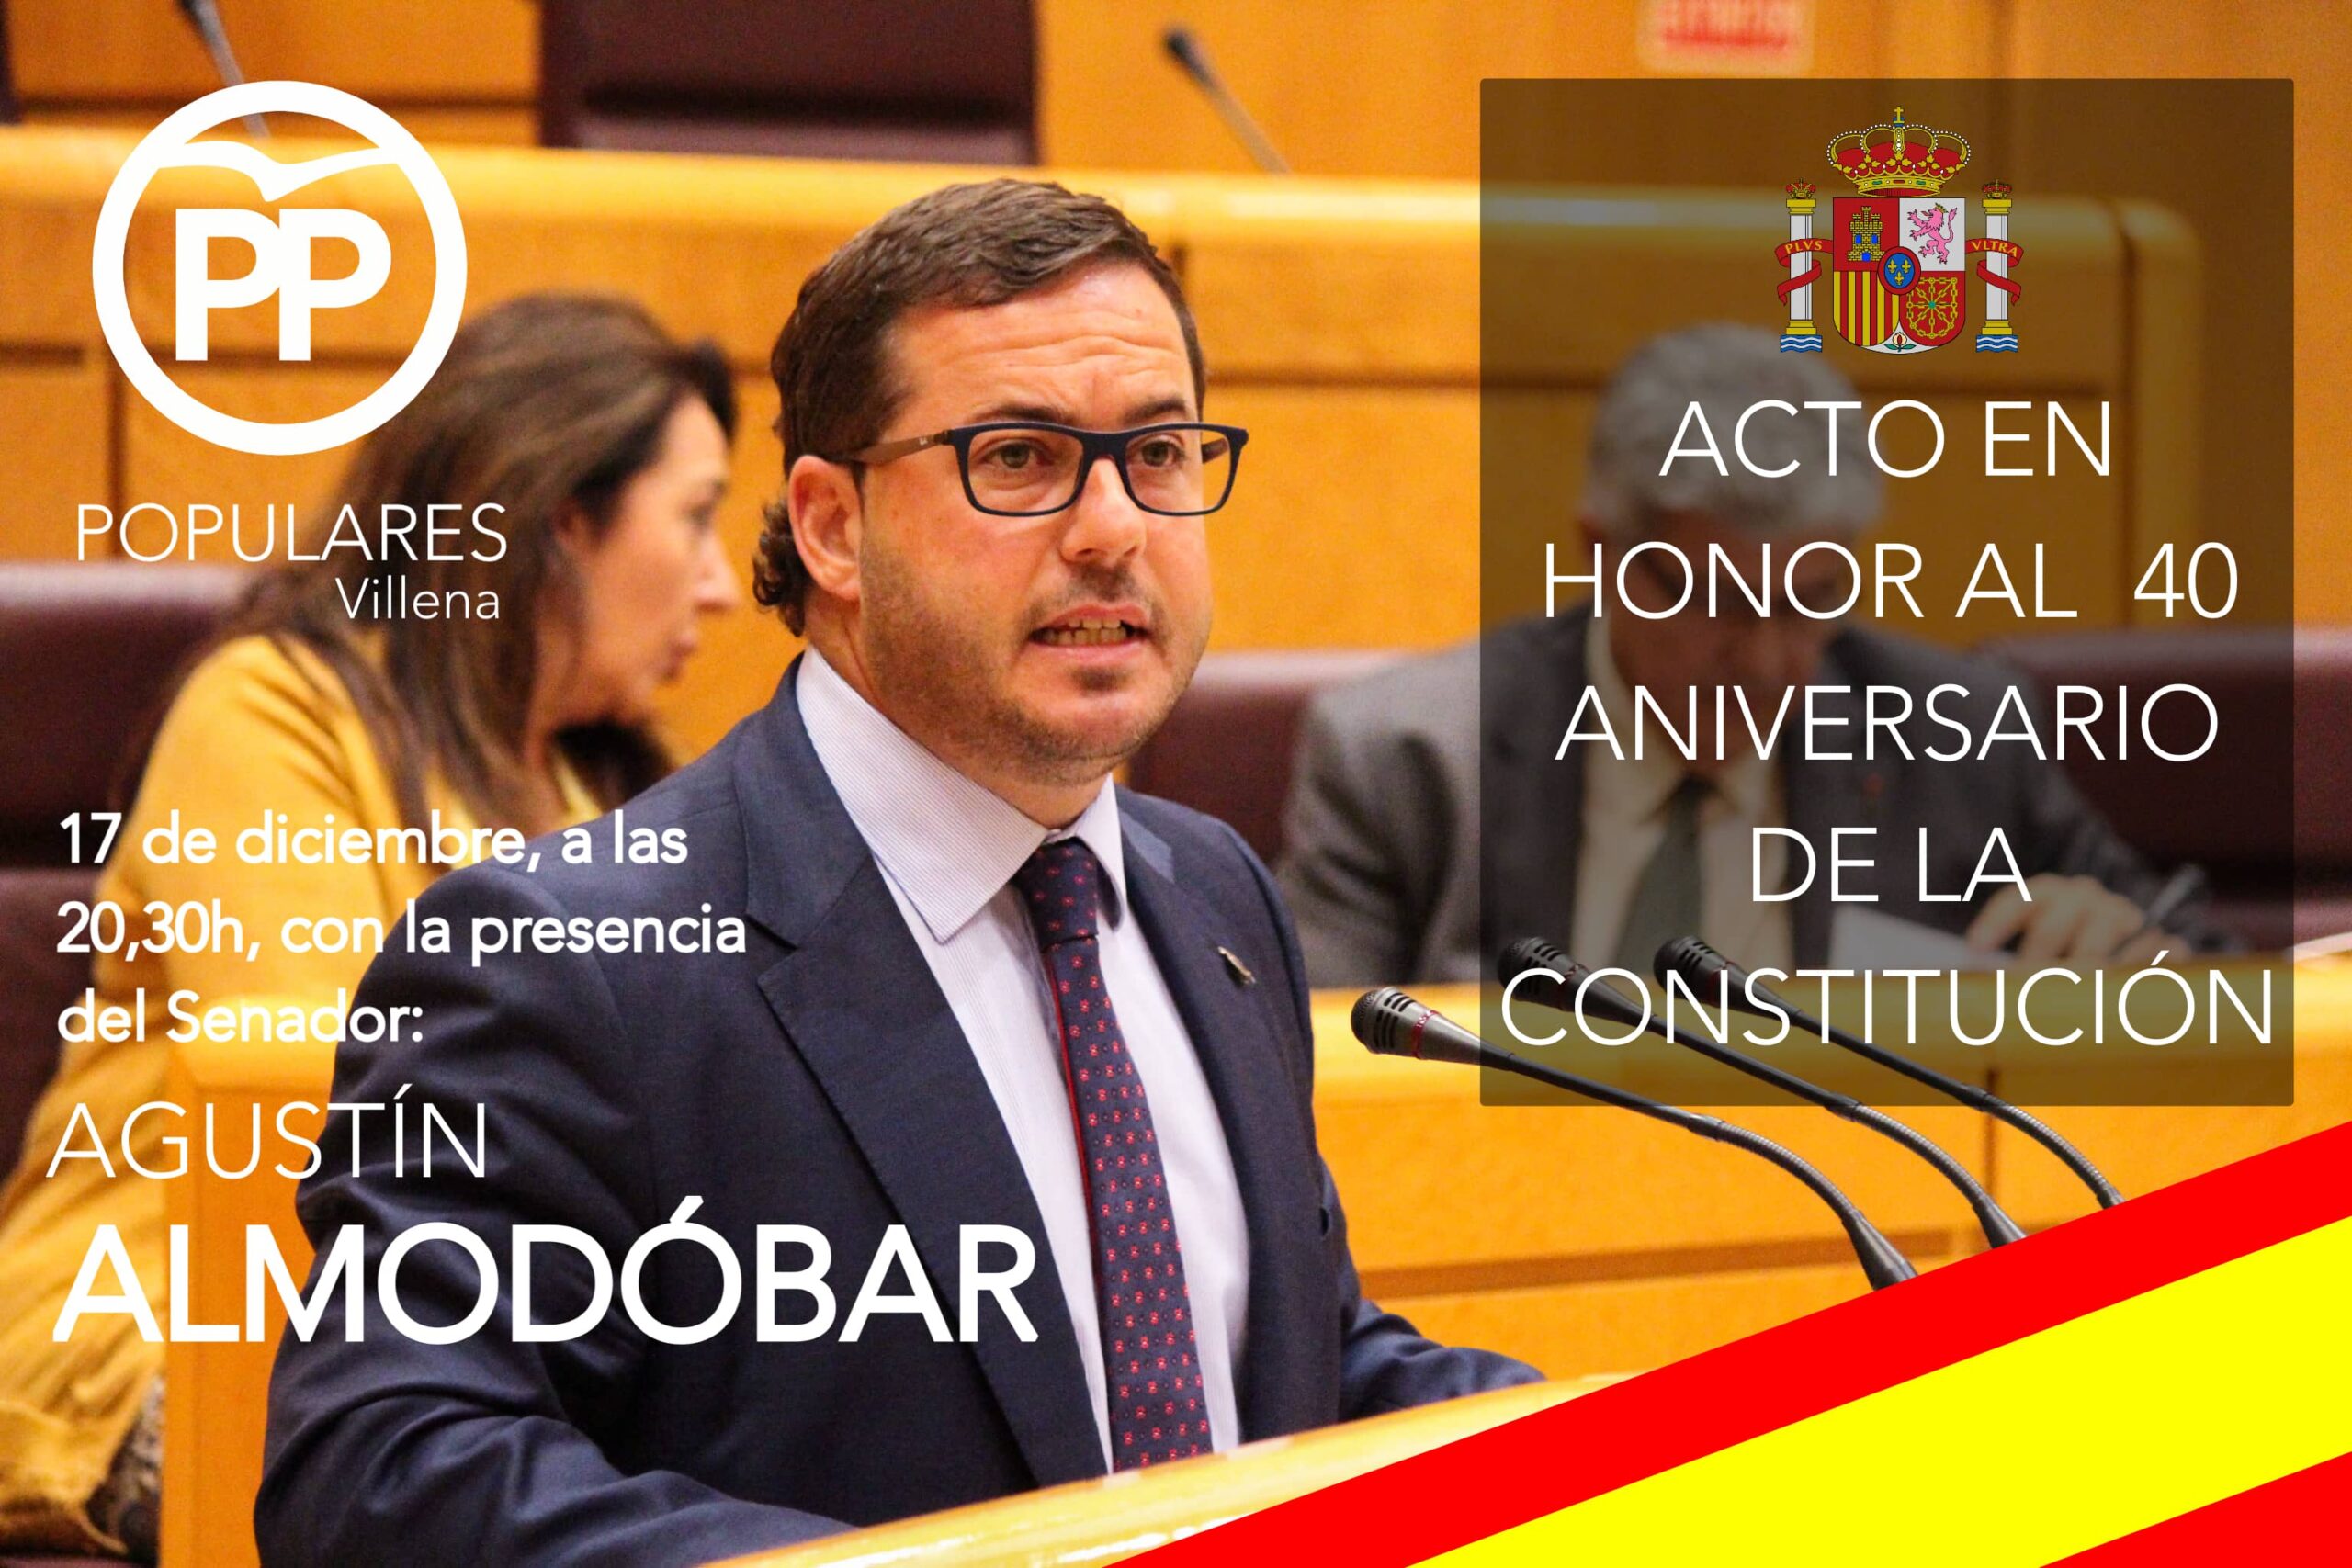 El PP celebra hoy su acto en honor a la constitución con el senador Agustín Almodóvar